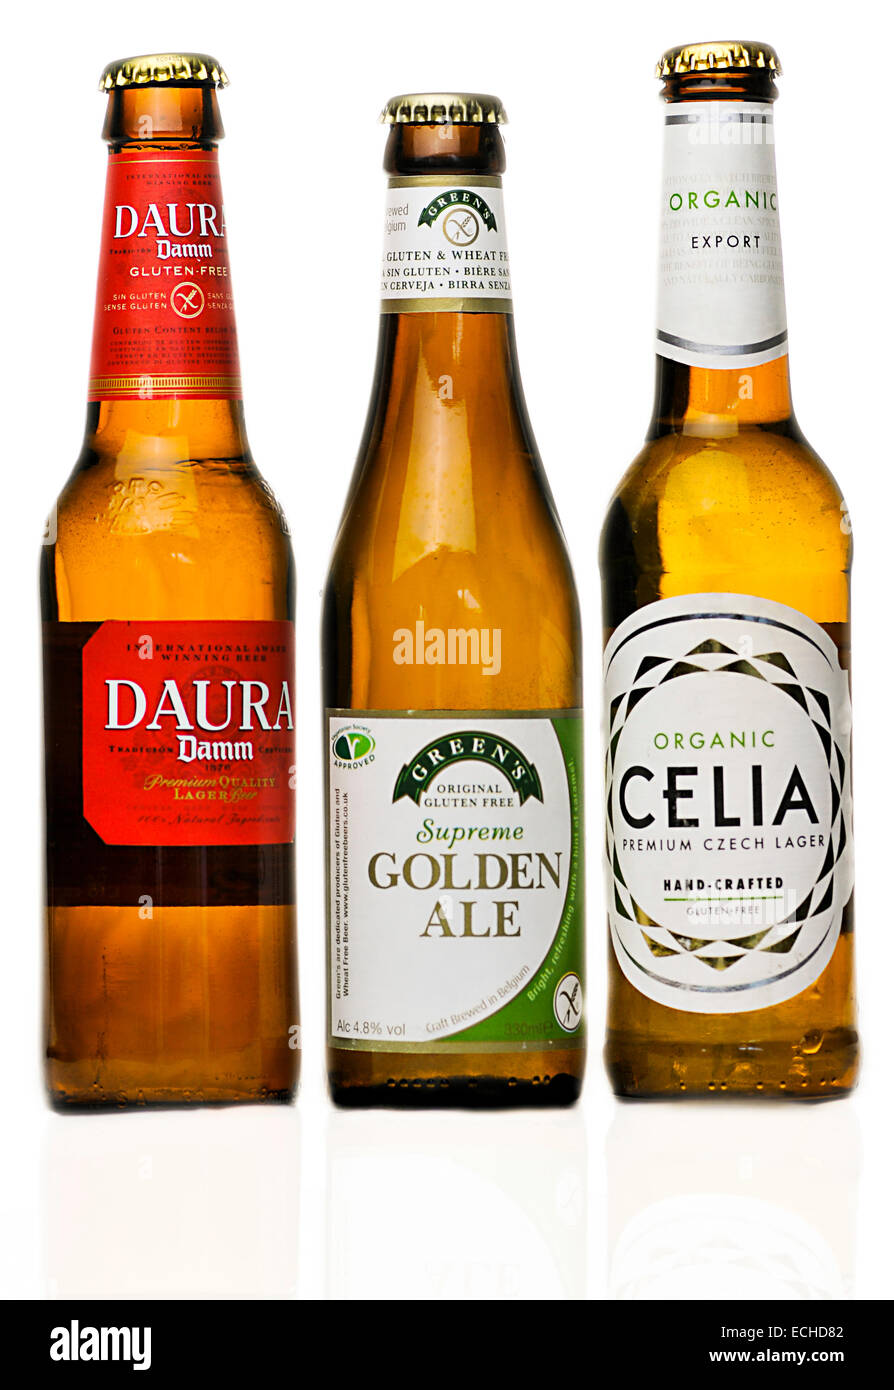 Trois bouteilles de bière sans gluten Damm Daura, verts et une bière de suprême Celia de la République tchèque Banque D'Images